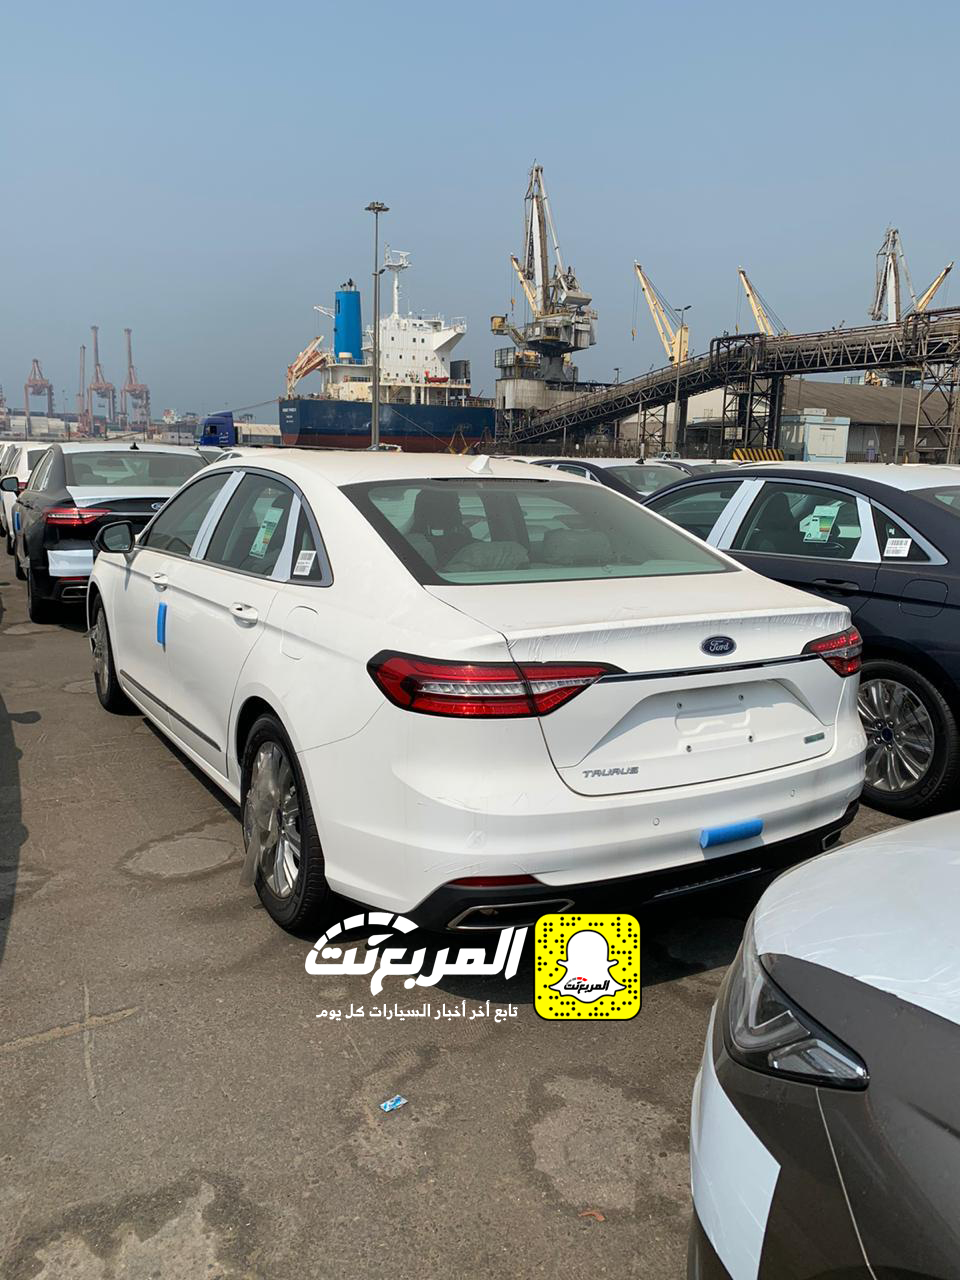 "بالصور" وصول فورد توروس 2020 الجديدة كلياً الى السعودية + التفاصيل Ford Taurus 37